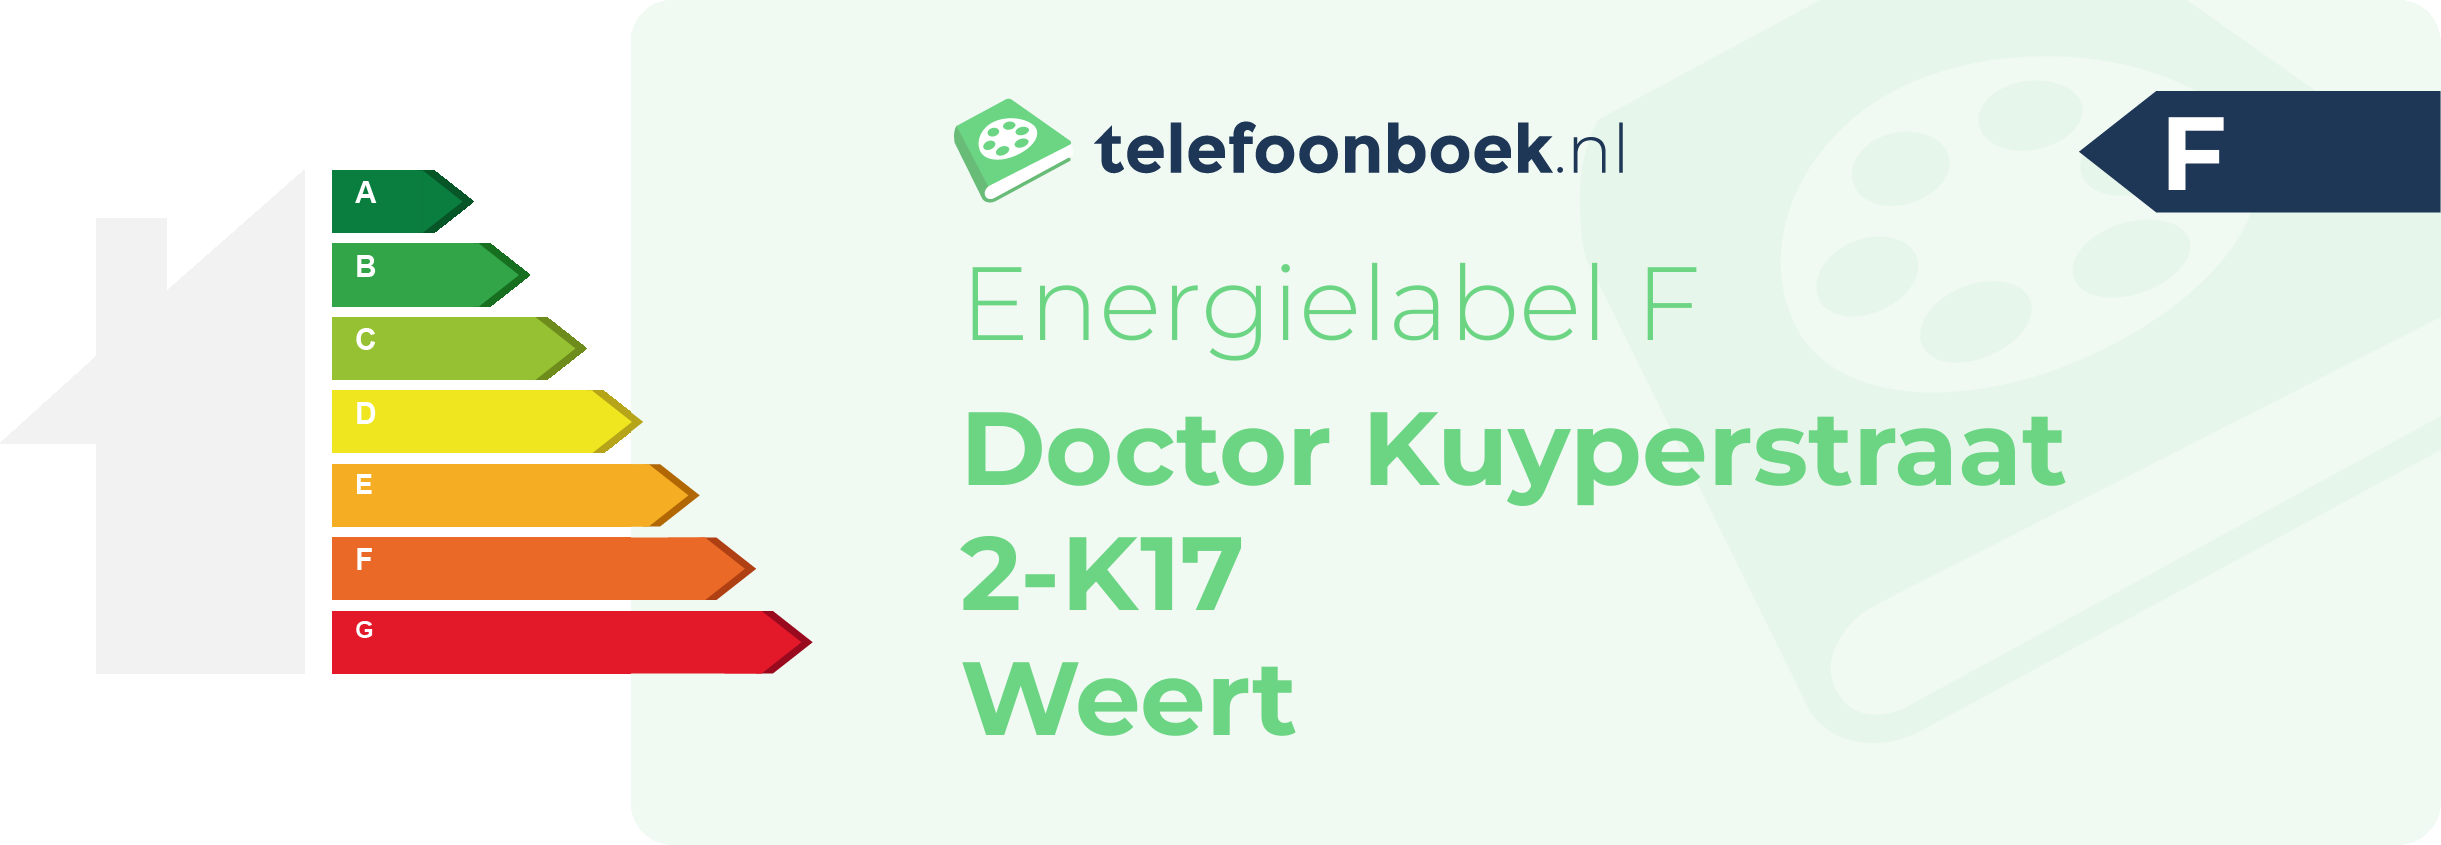 Energielabel Doctor Kuyperstraat 2-K17 Weert